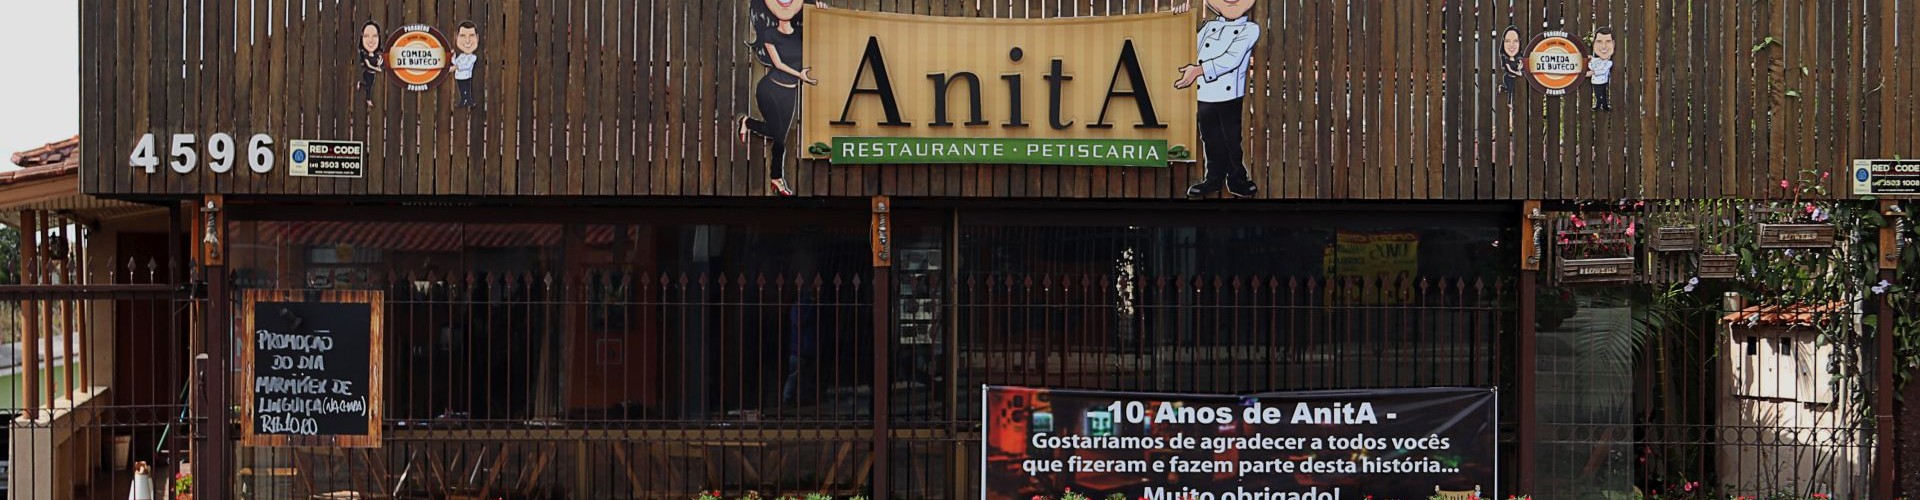 Sérgio Luis Todeschi, 36 anos, dono do restaurante Anita, que serve refeições a pessoas carentes todos os dias no Barreirinha. Foto: Rodrigo Cunha/Tribuna do Paraná